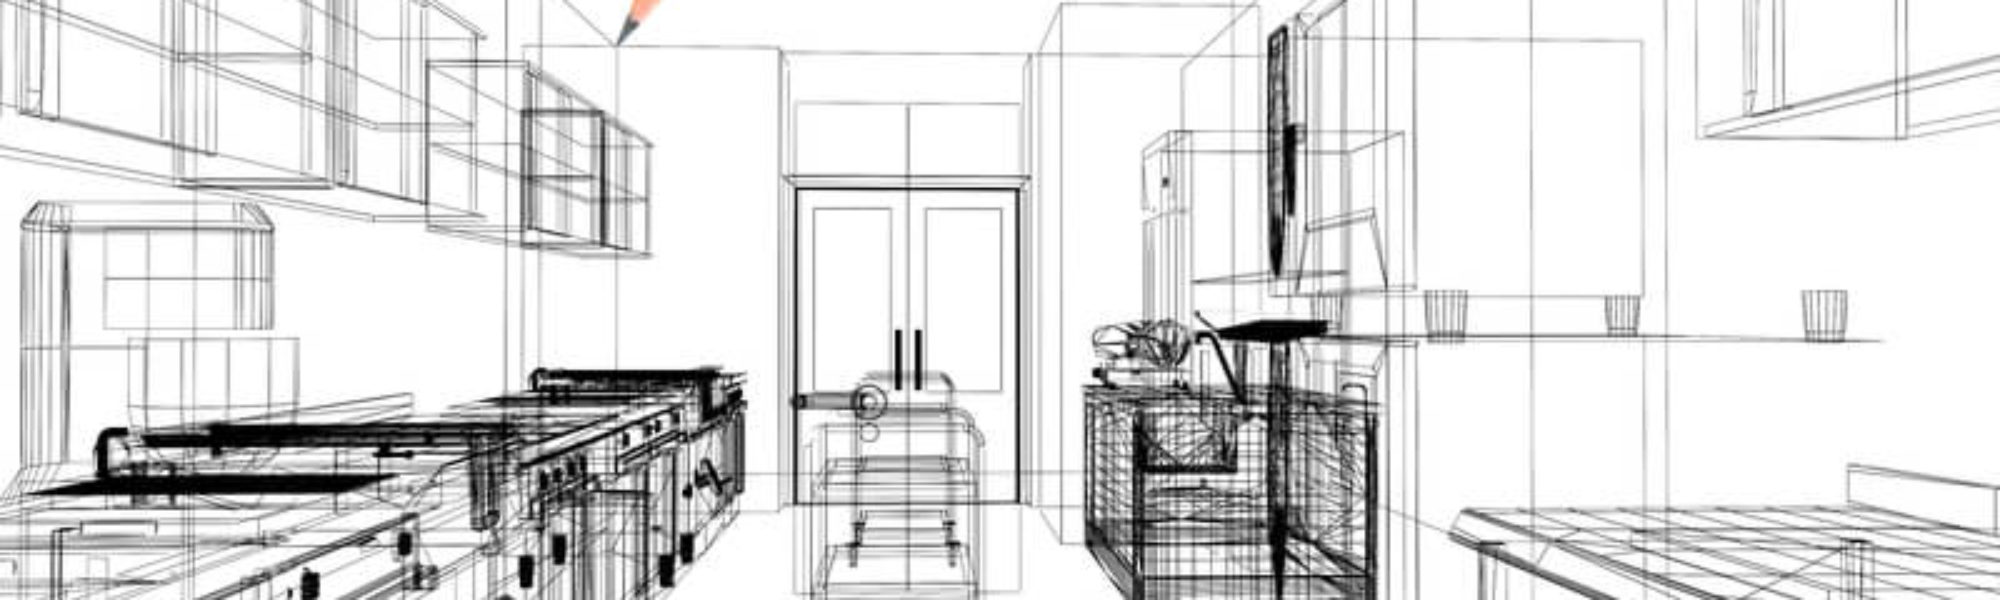 Designing A Hotel Kitchen